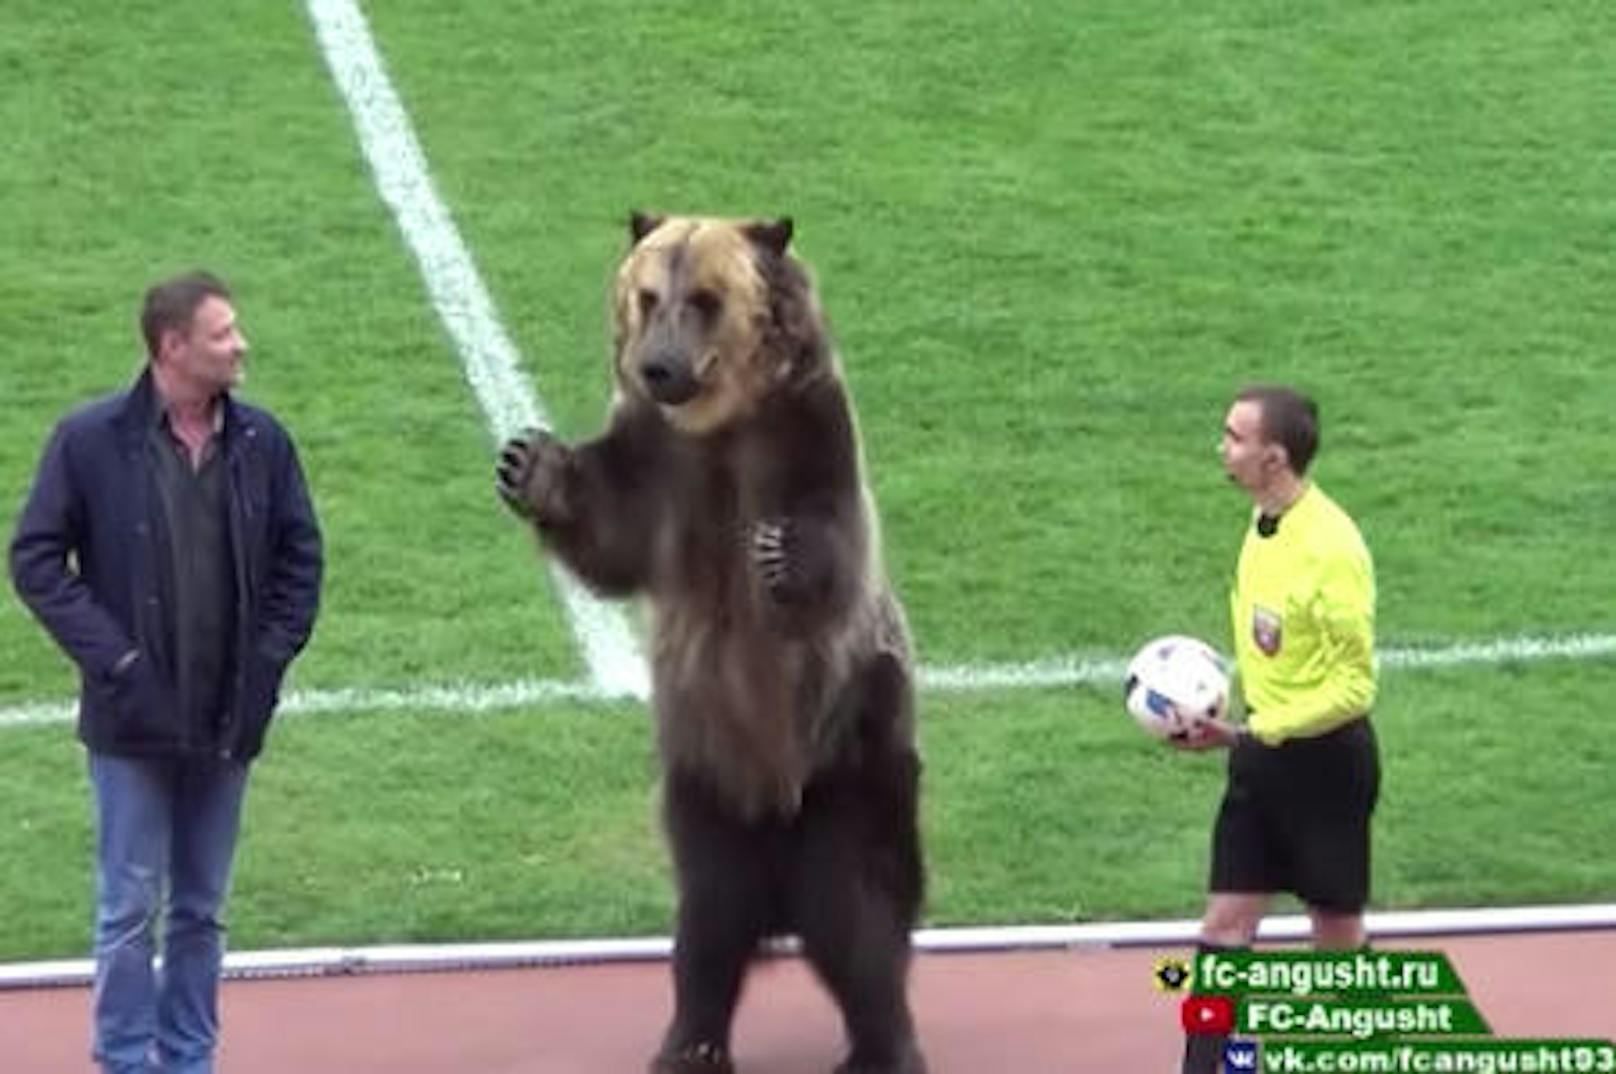 Vor WM in Russland - Bärin übergab Matchball - das Video sorgte für Diskussionen